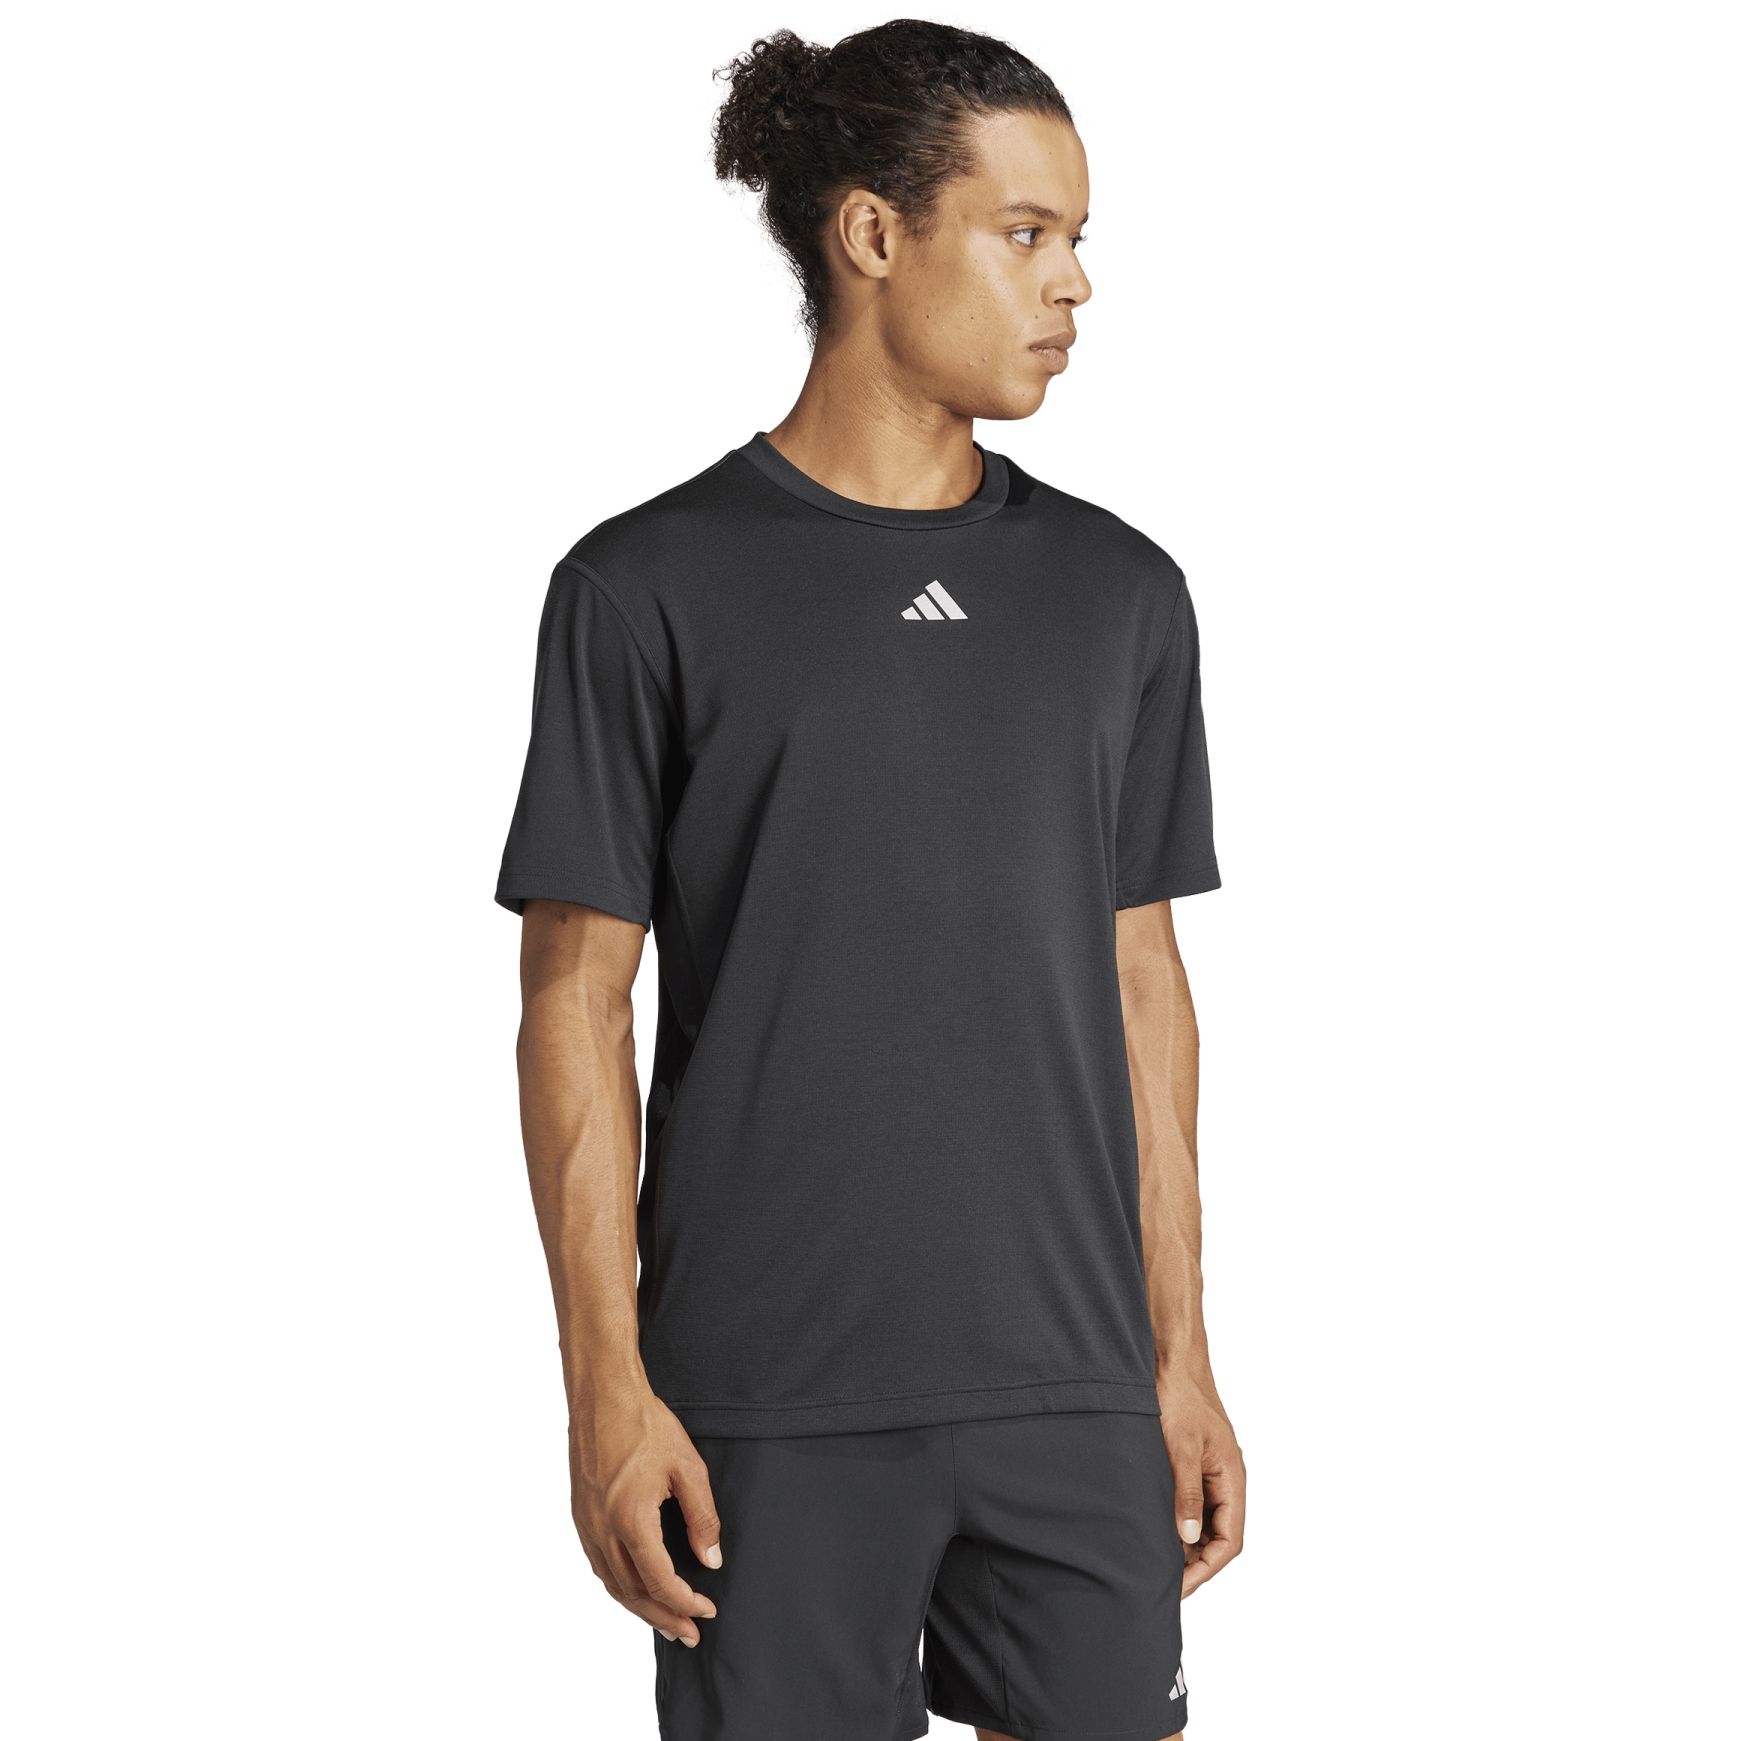 Produktbild von adidas Hiit 3-Stripes Workout T-Shirt Herren - schwarz IL7128